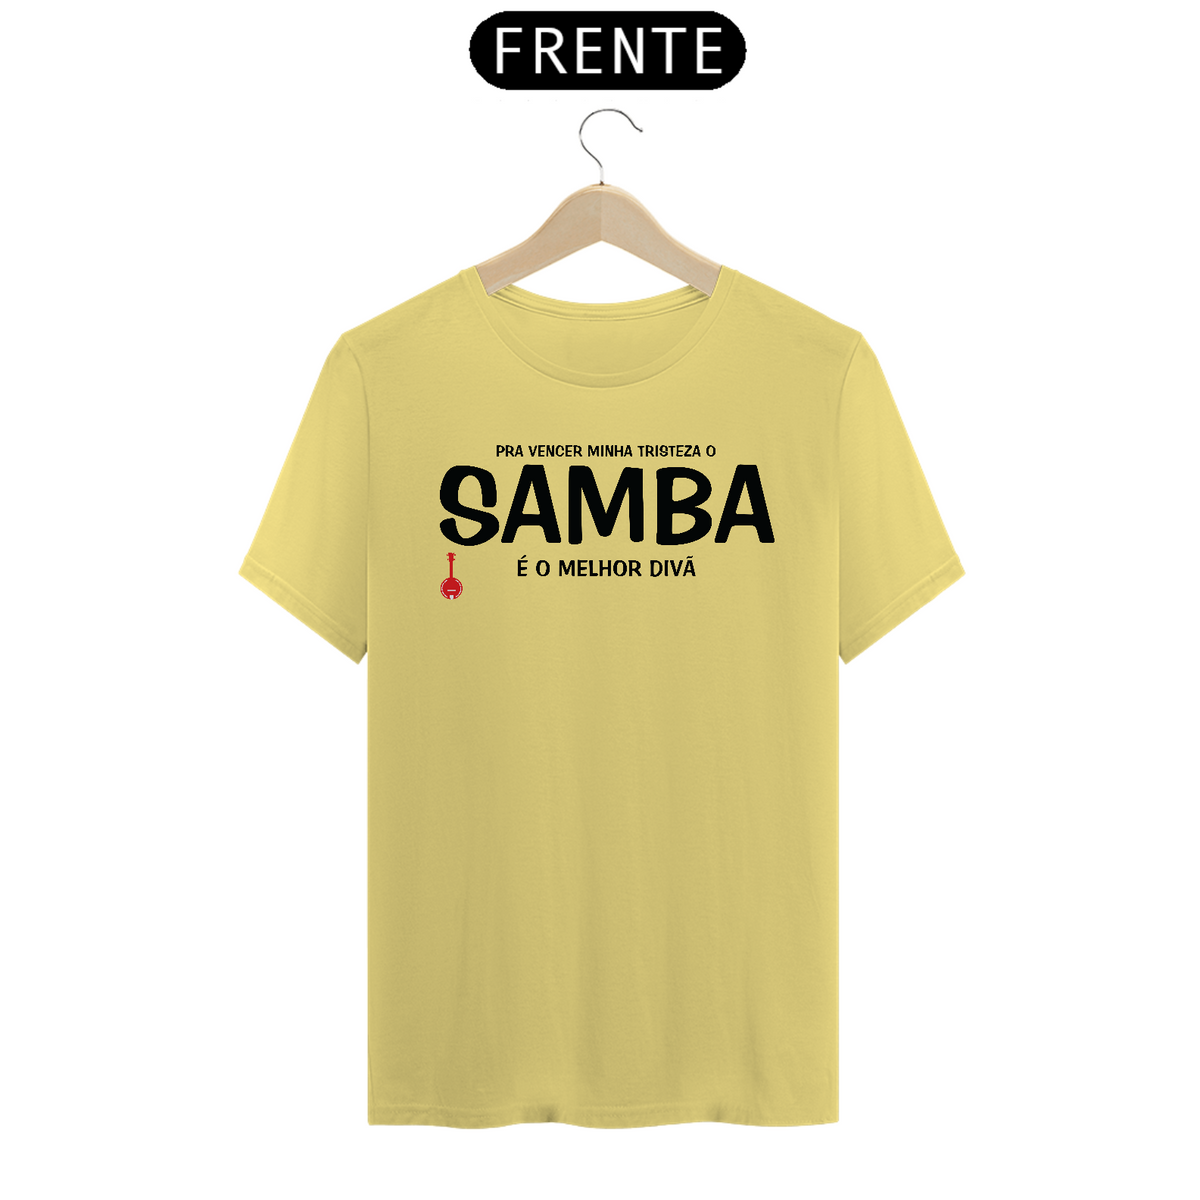 Nome do produto: Camiseta Pra vencer Minha Tristeza o Samba é o Melhor Divã - Amarela Estonada